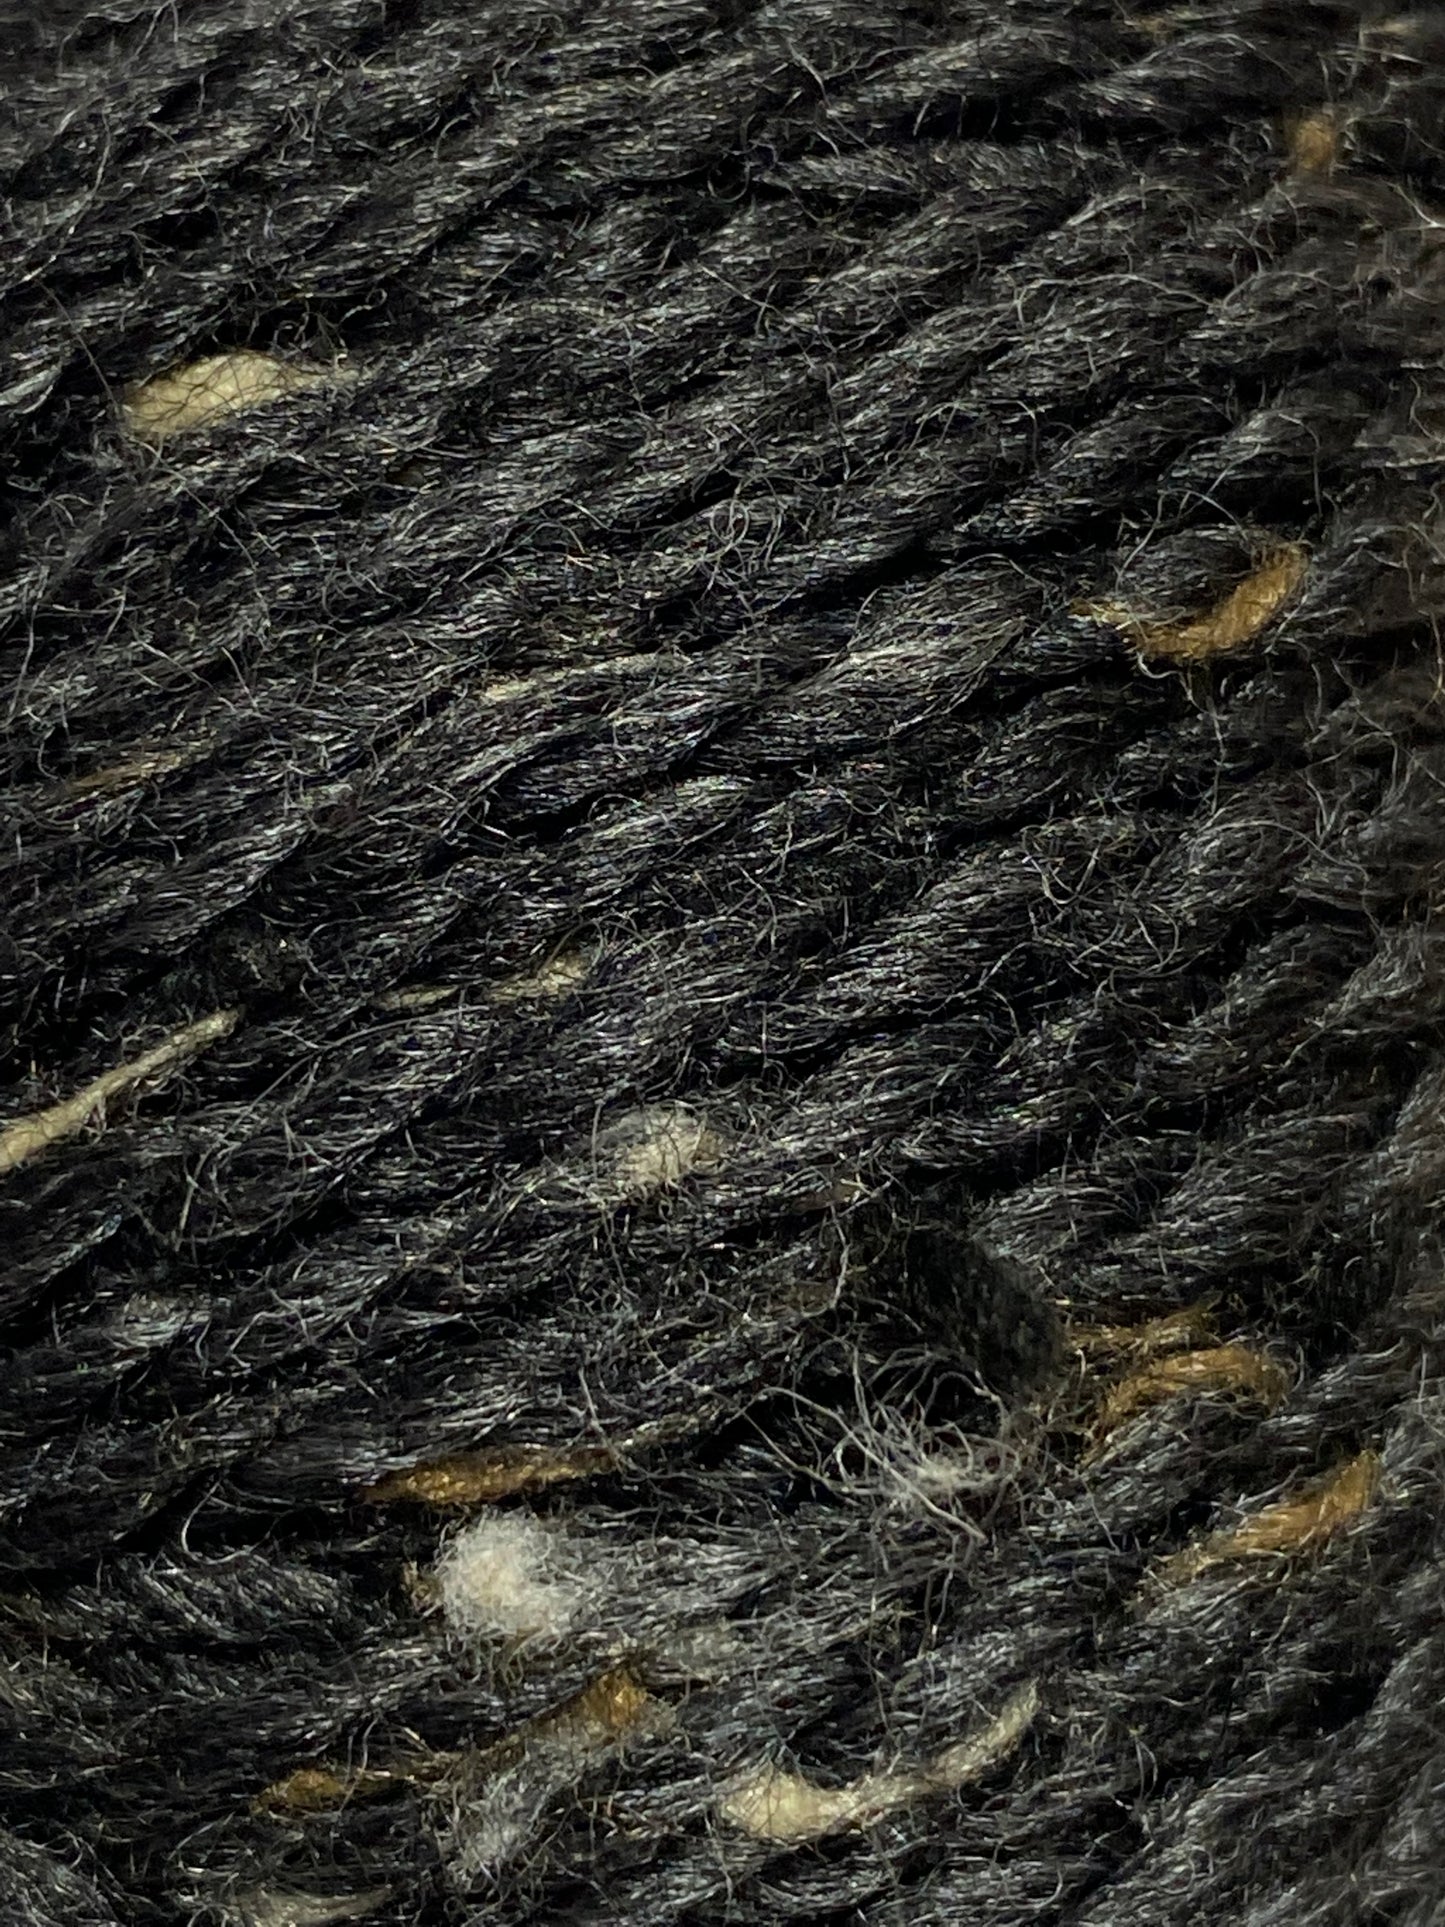 Inca Spun -10PLY- Tweed